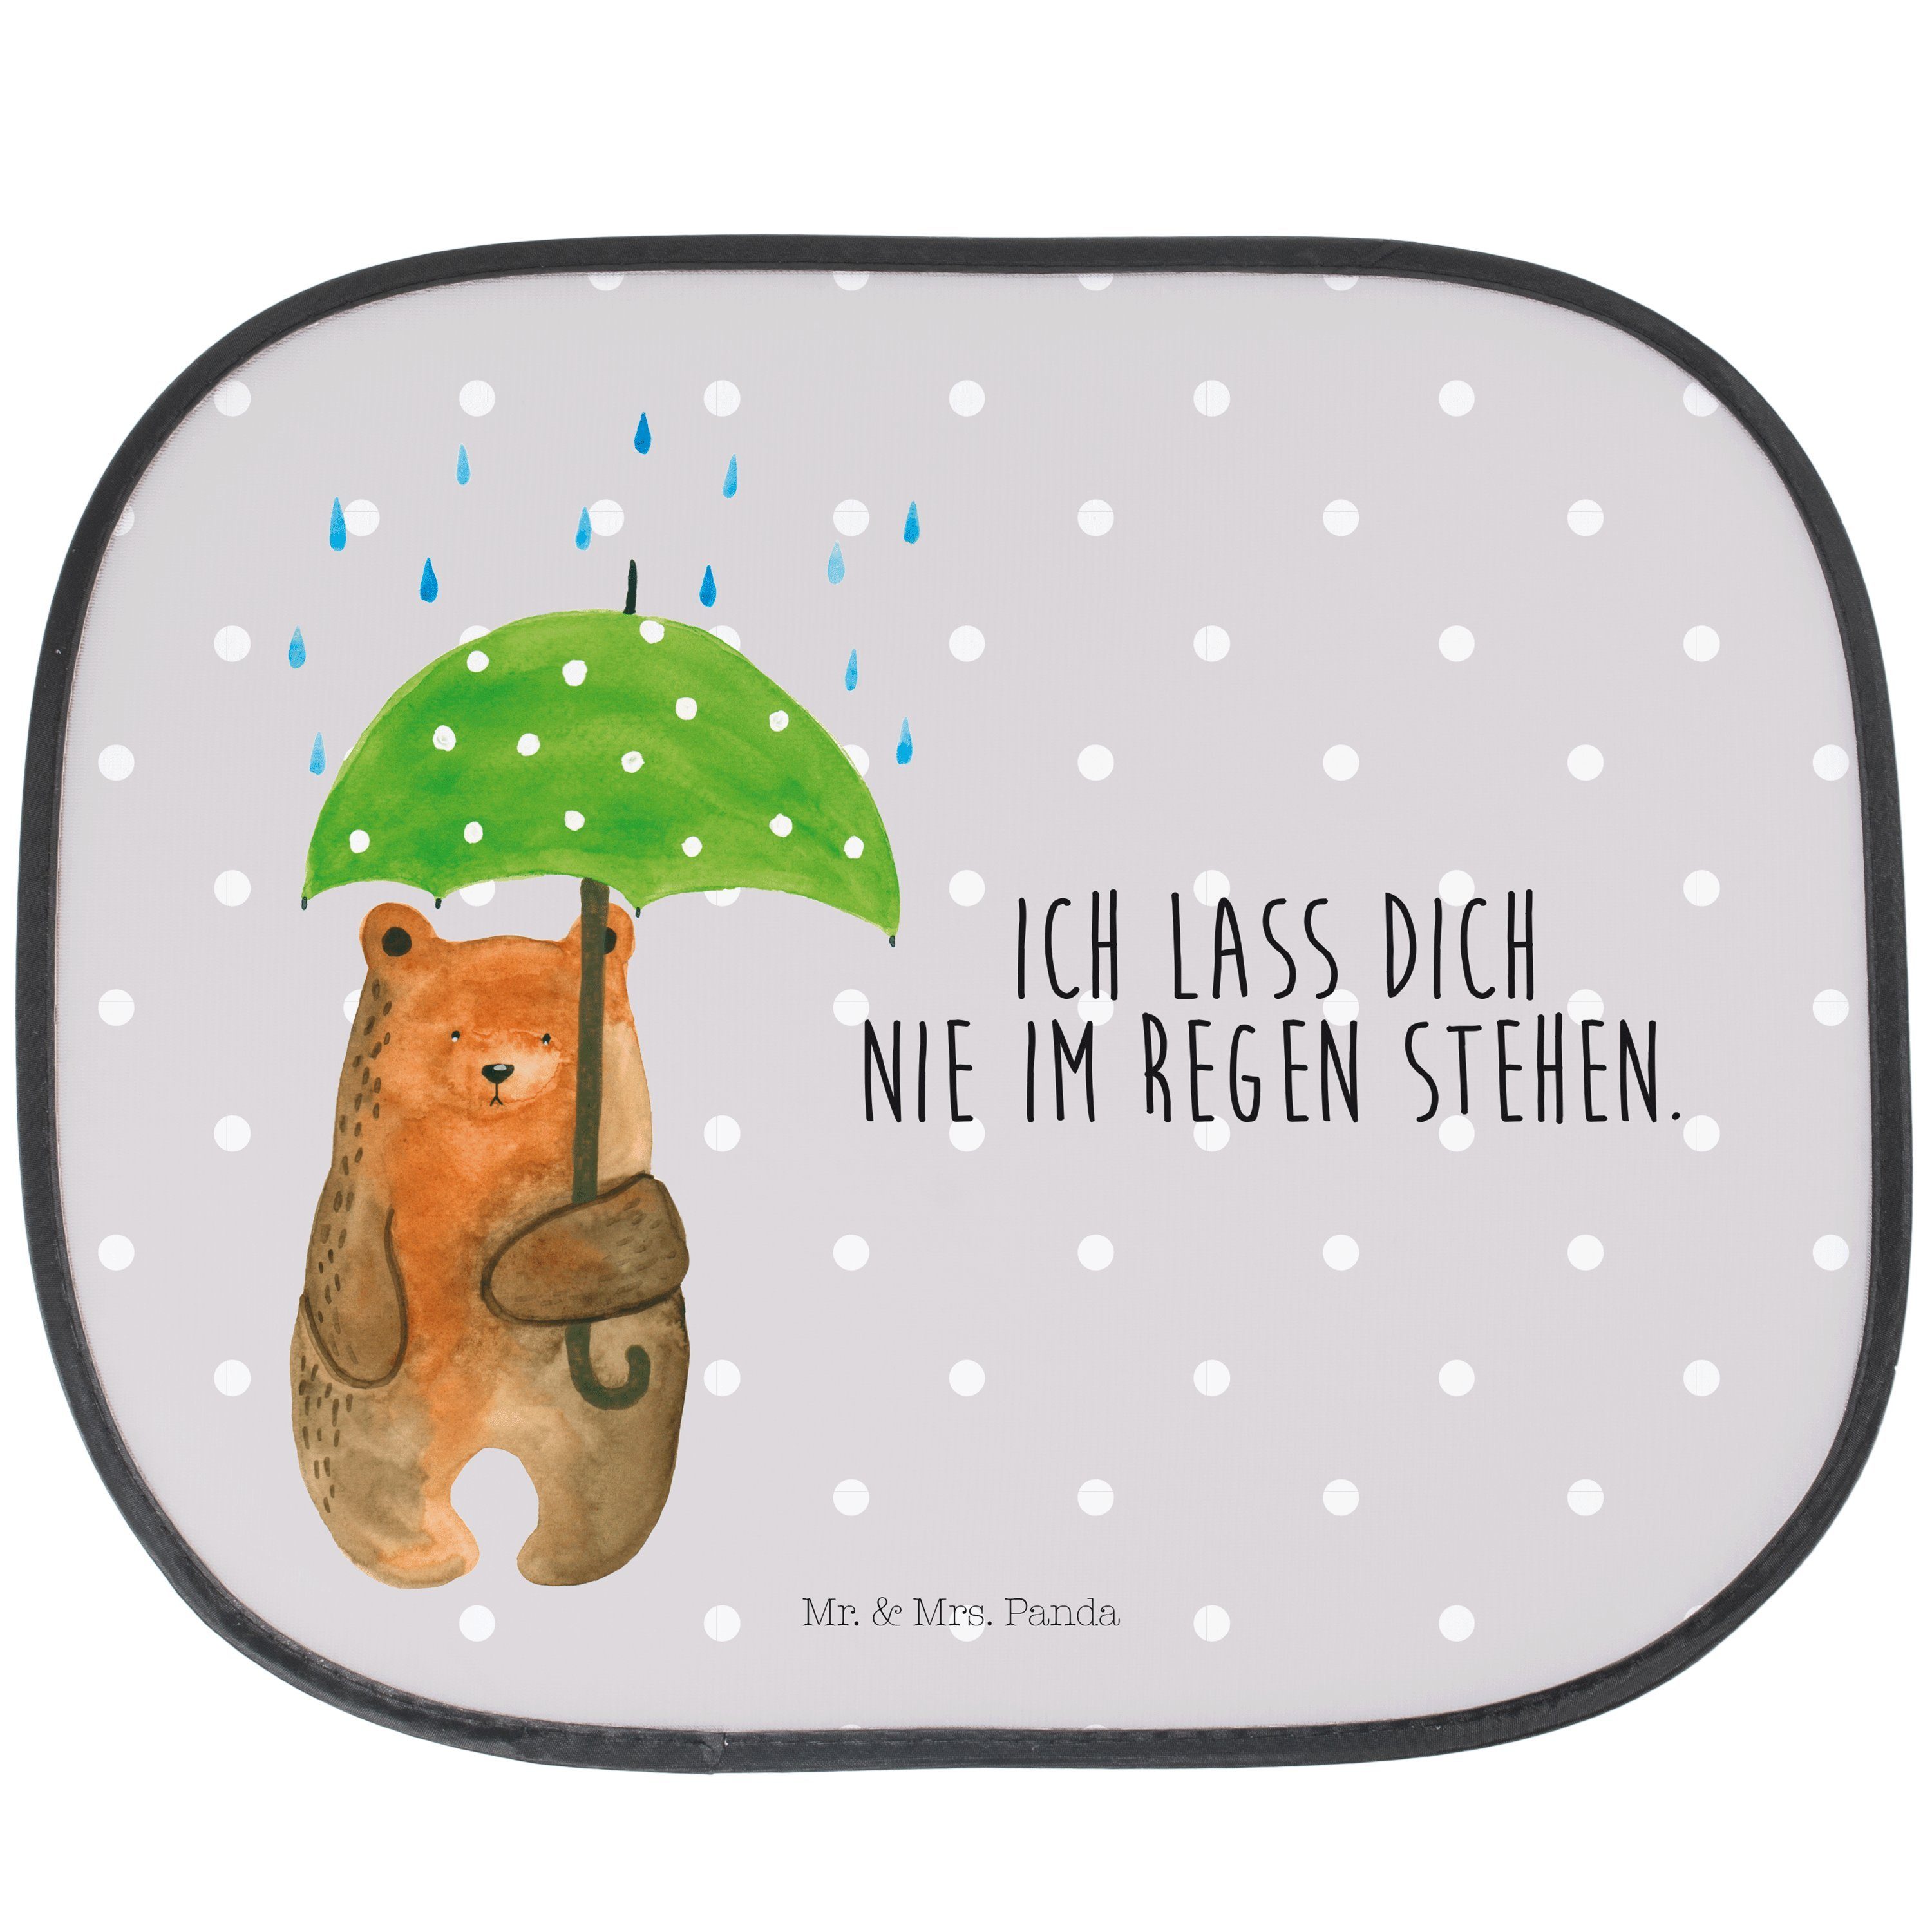 Sonnenschutz Bär mit Regenschirm - Grau Pastell - Geschenk, Liebe, Sonne, Auto Son, Mr. & Mrs. Panda, Seidenmatt